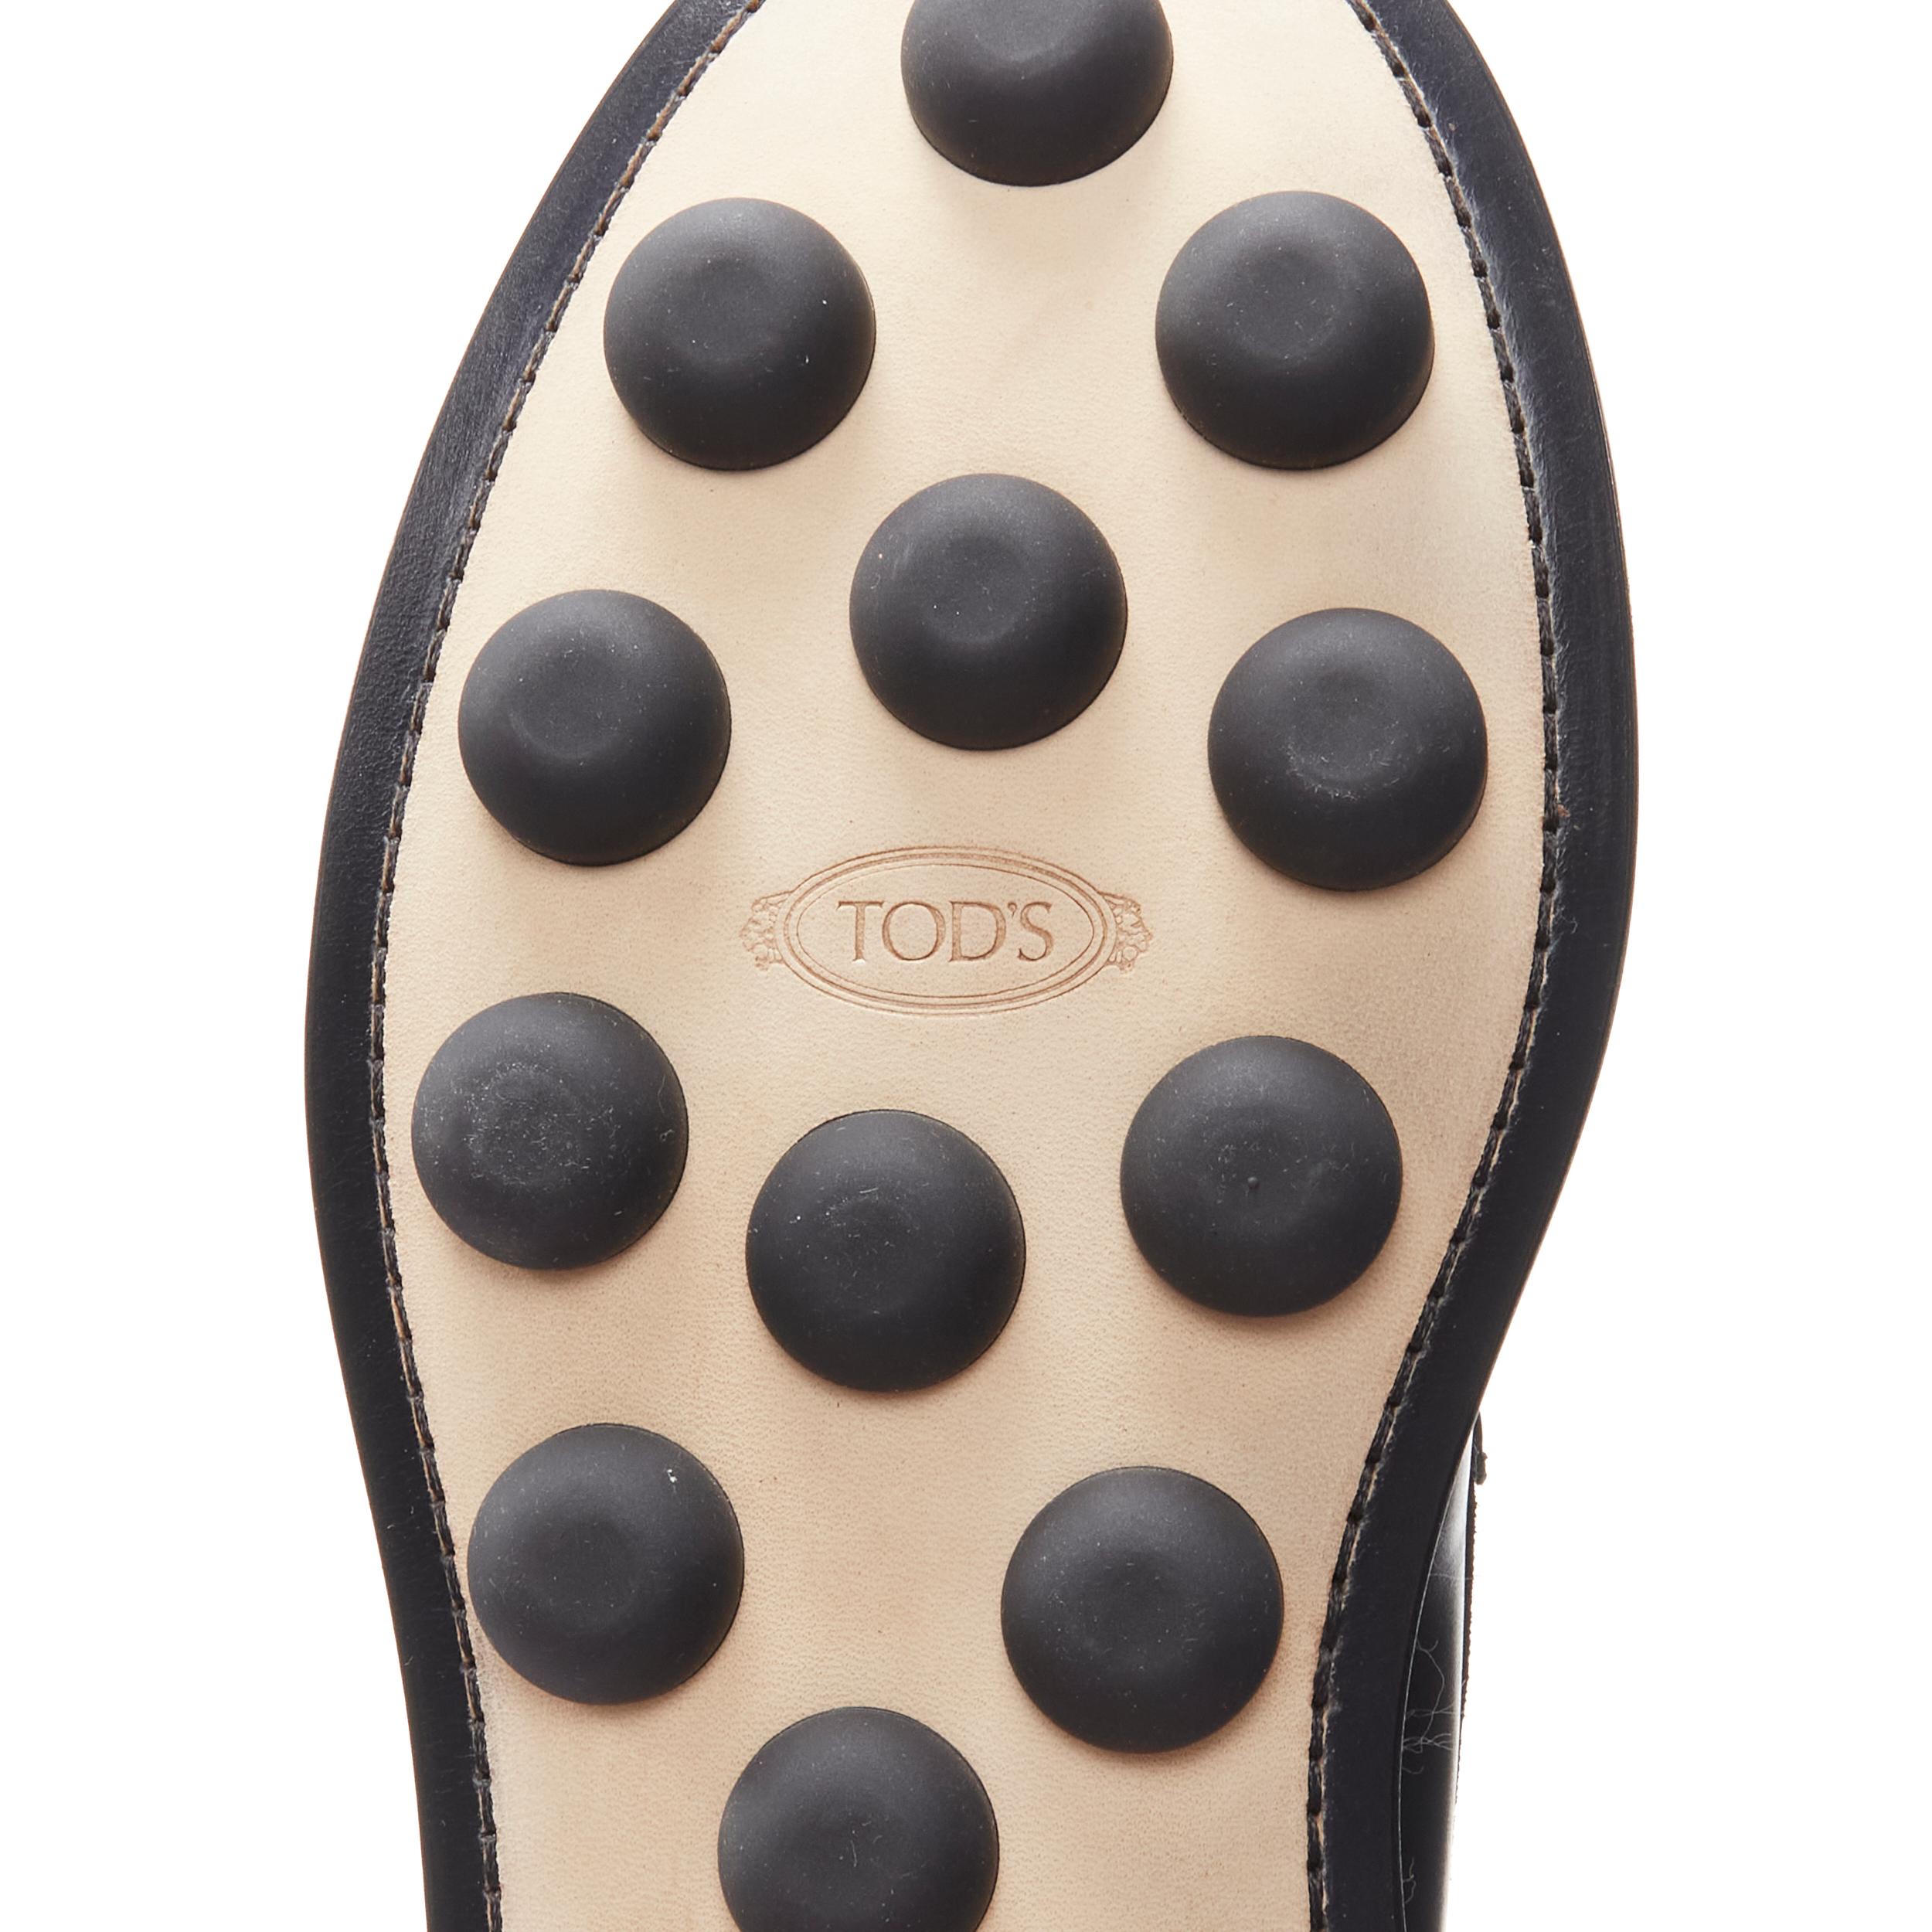 new TODS HENDER SCHEME black croc embossed DOT'S sole loafer UK8 EU42 4